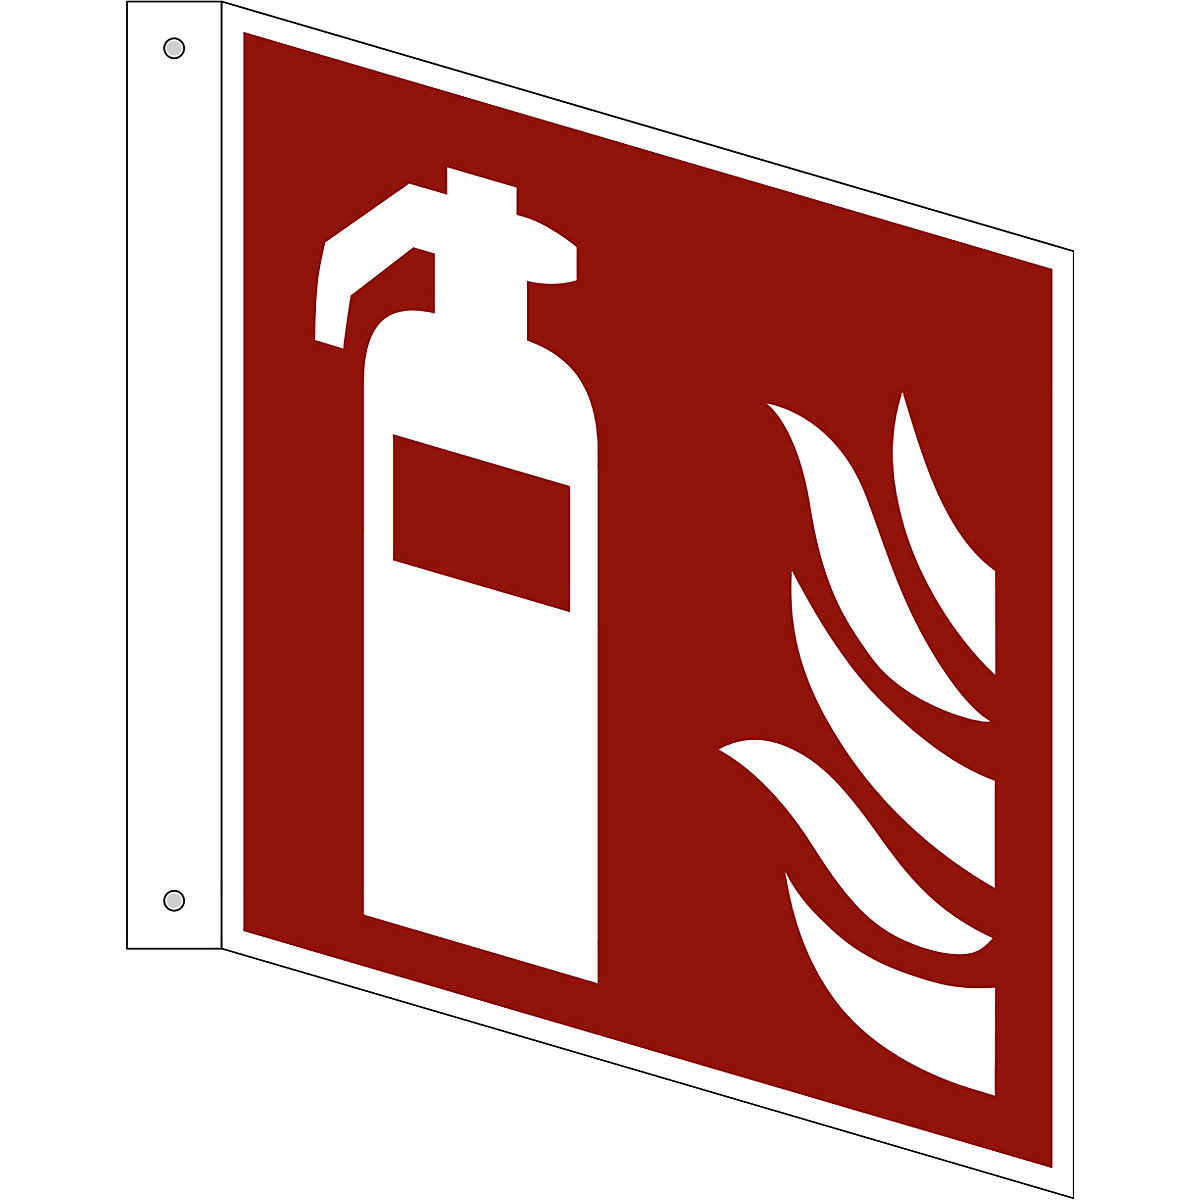 Značka pro ochranu proti požáru, hasicí přístroj, bal.j. 10 ks, plast, vlajkový štítek, 200 x 200 mm